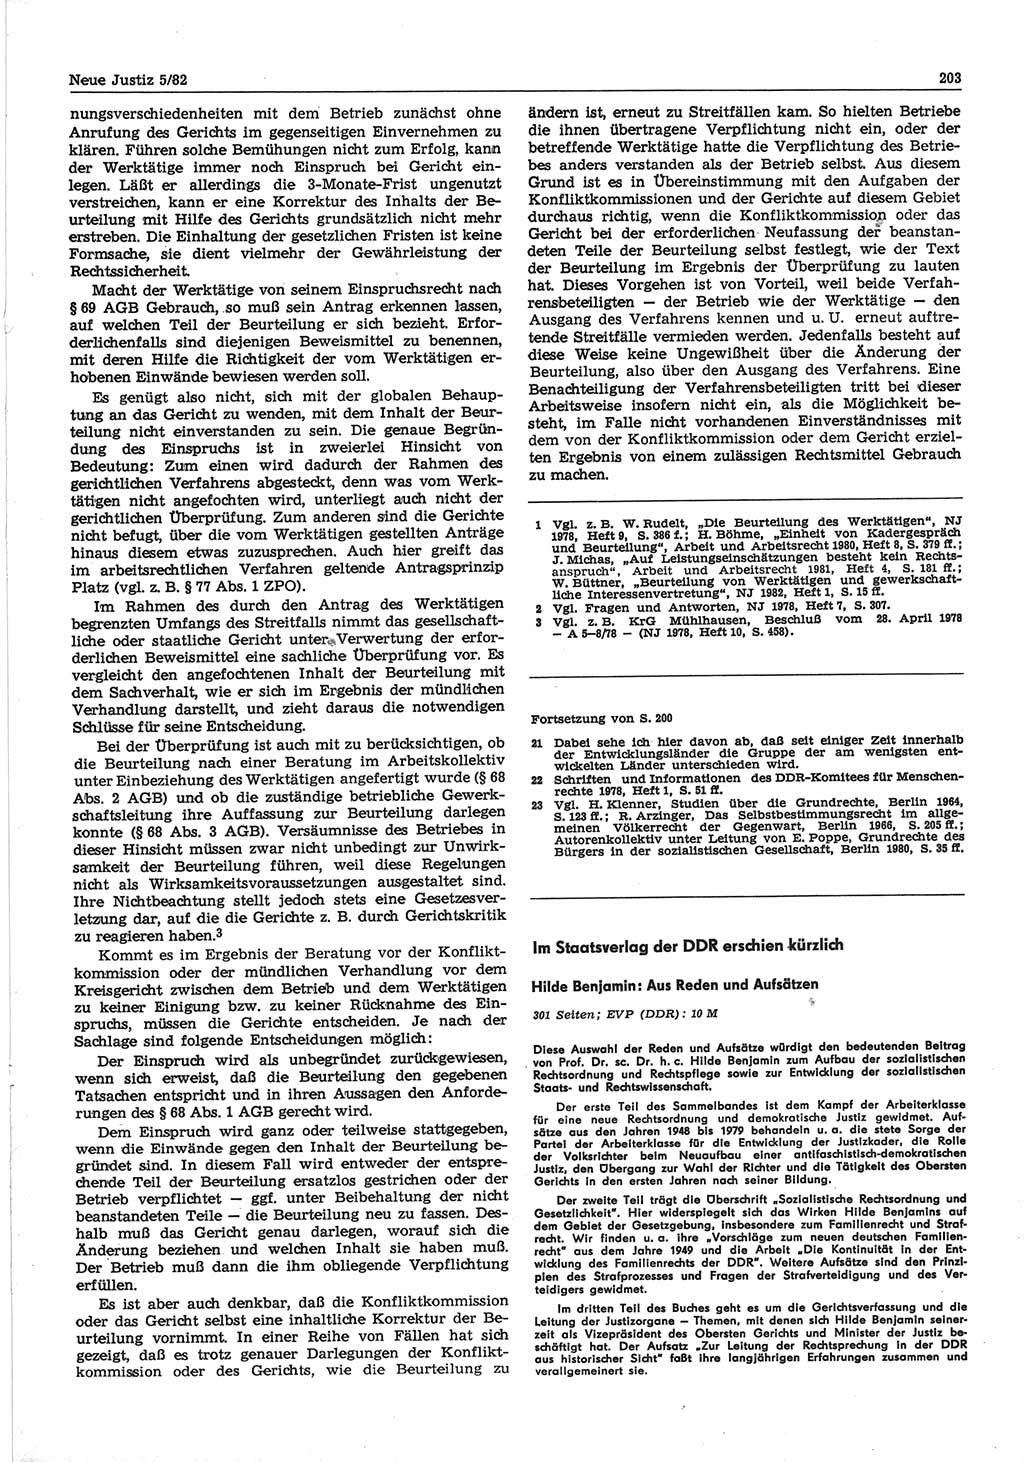 Neue Justiz (NJ), Zeitschrift für sozialistisches Recht und Gesetzlichkeit [Deutsche Demokratische Republik (DDR)], 36. Jahrgang 1982, Seite 203 (NJ DDR 1982, S. 203)